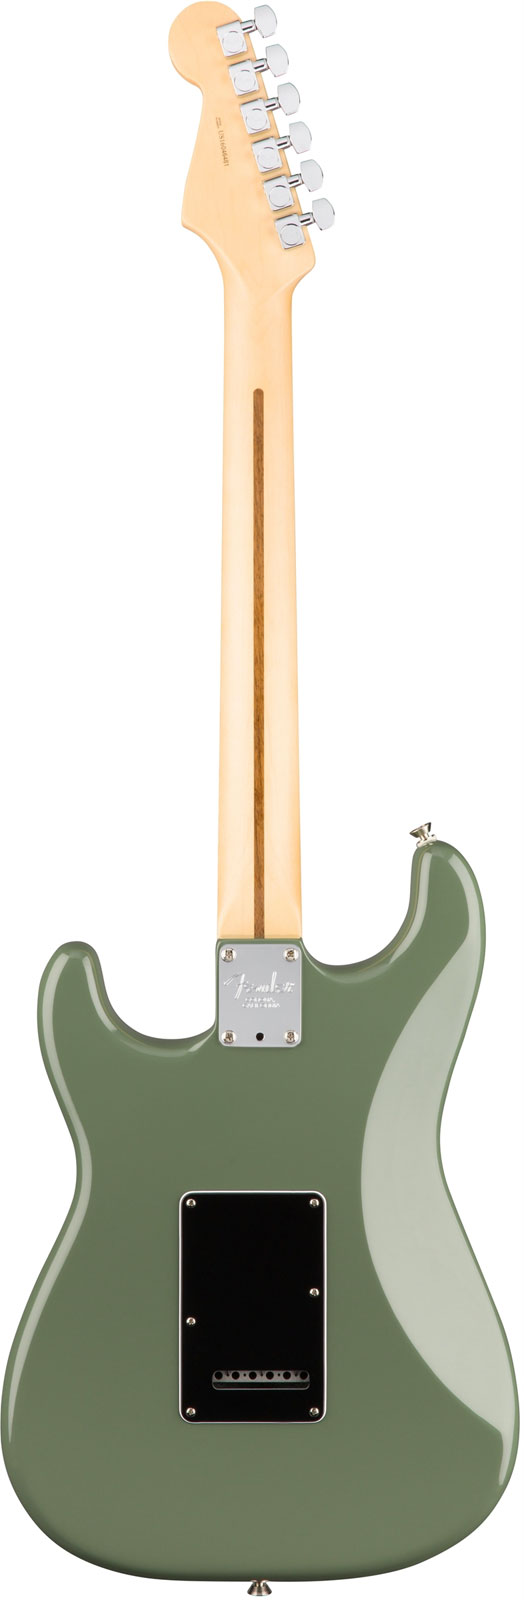 Fender Strat American Professional 2017 3s Usa Rw - Antique Olive - Elektrische gitaar in Str-vorm - Variation 2